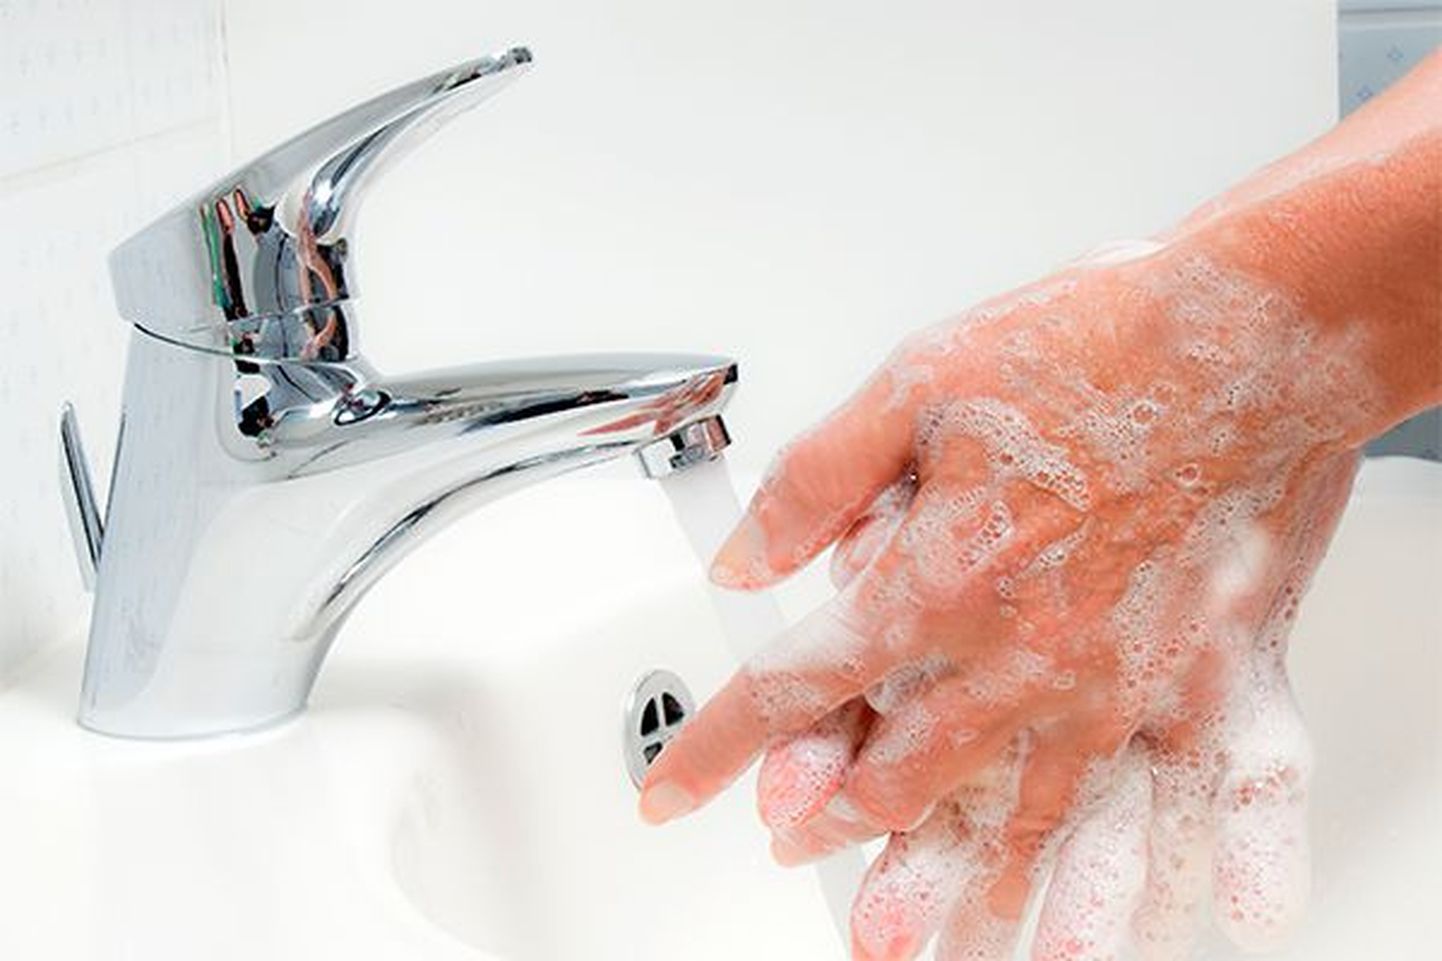 мытье рук с мылом